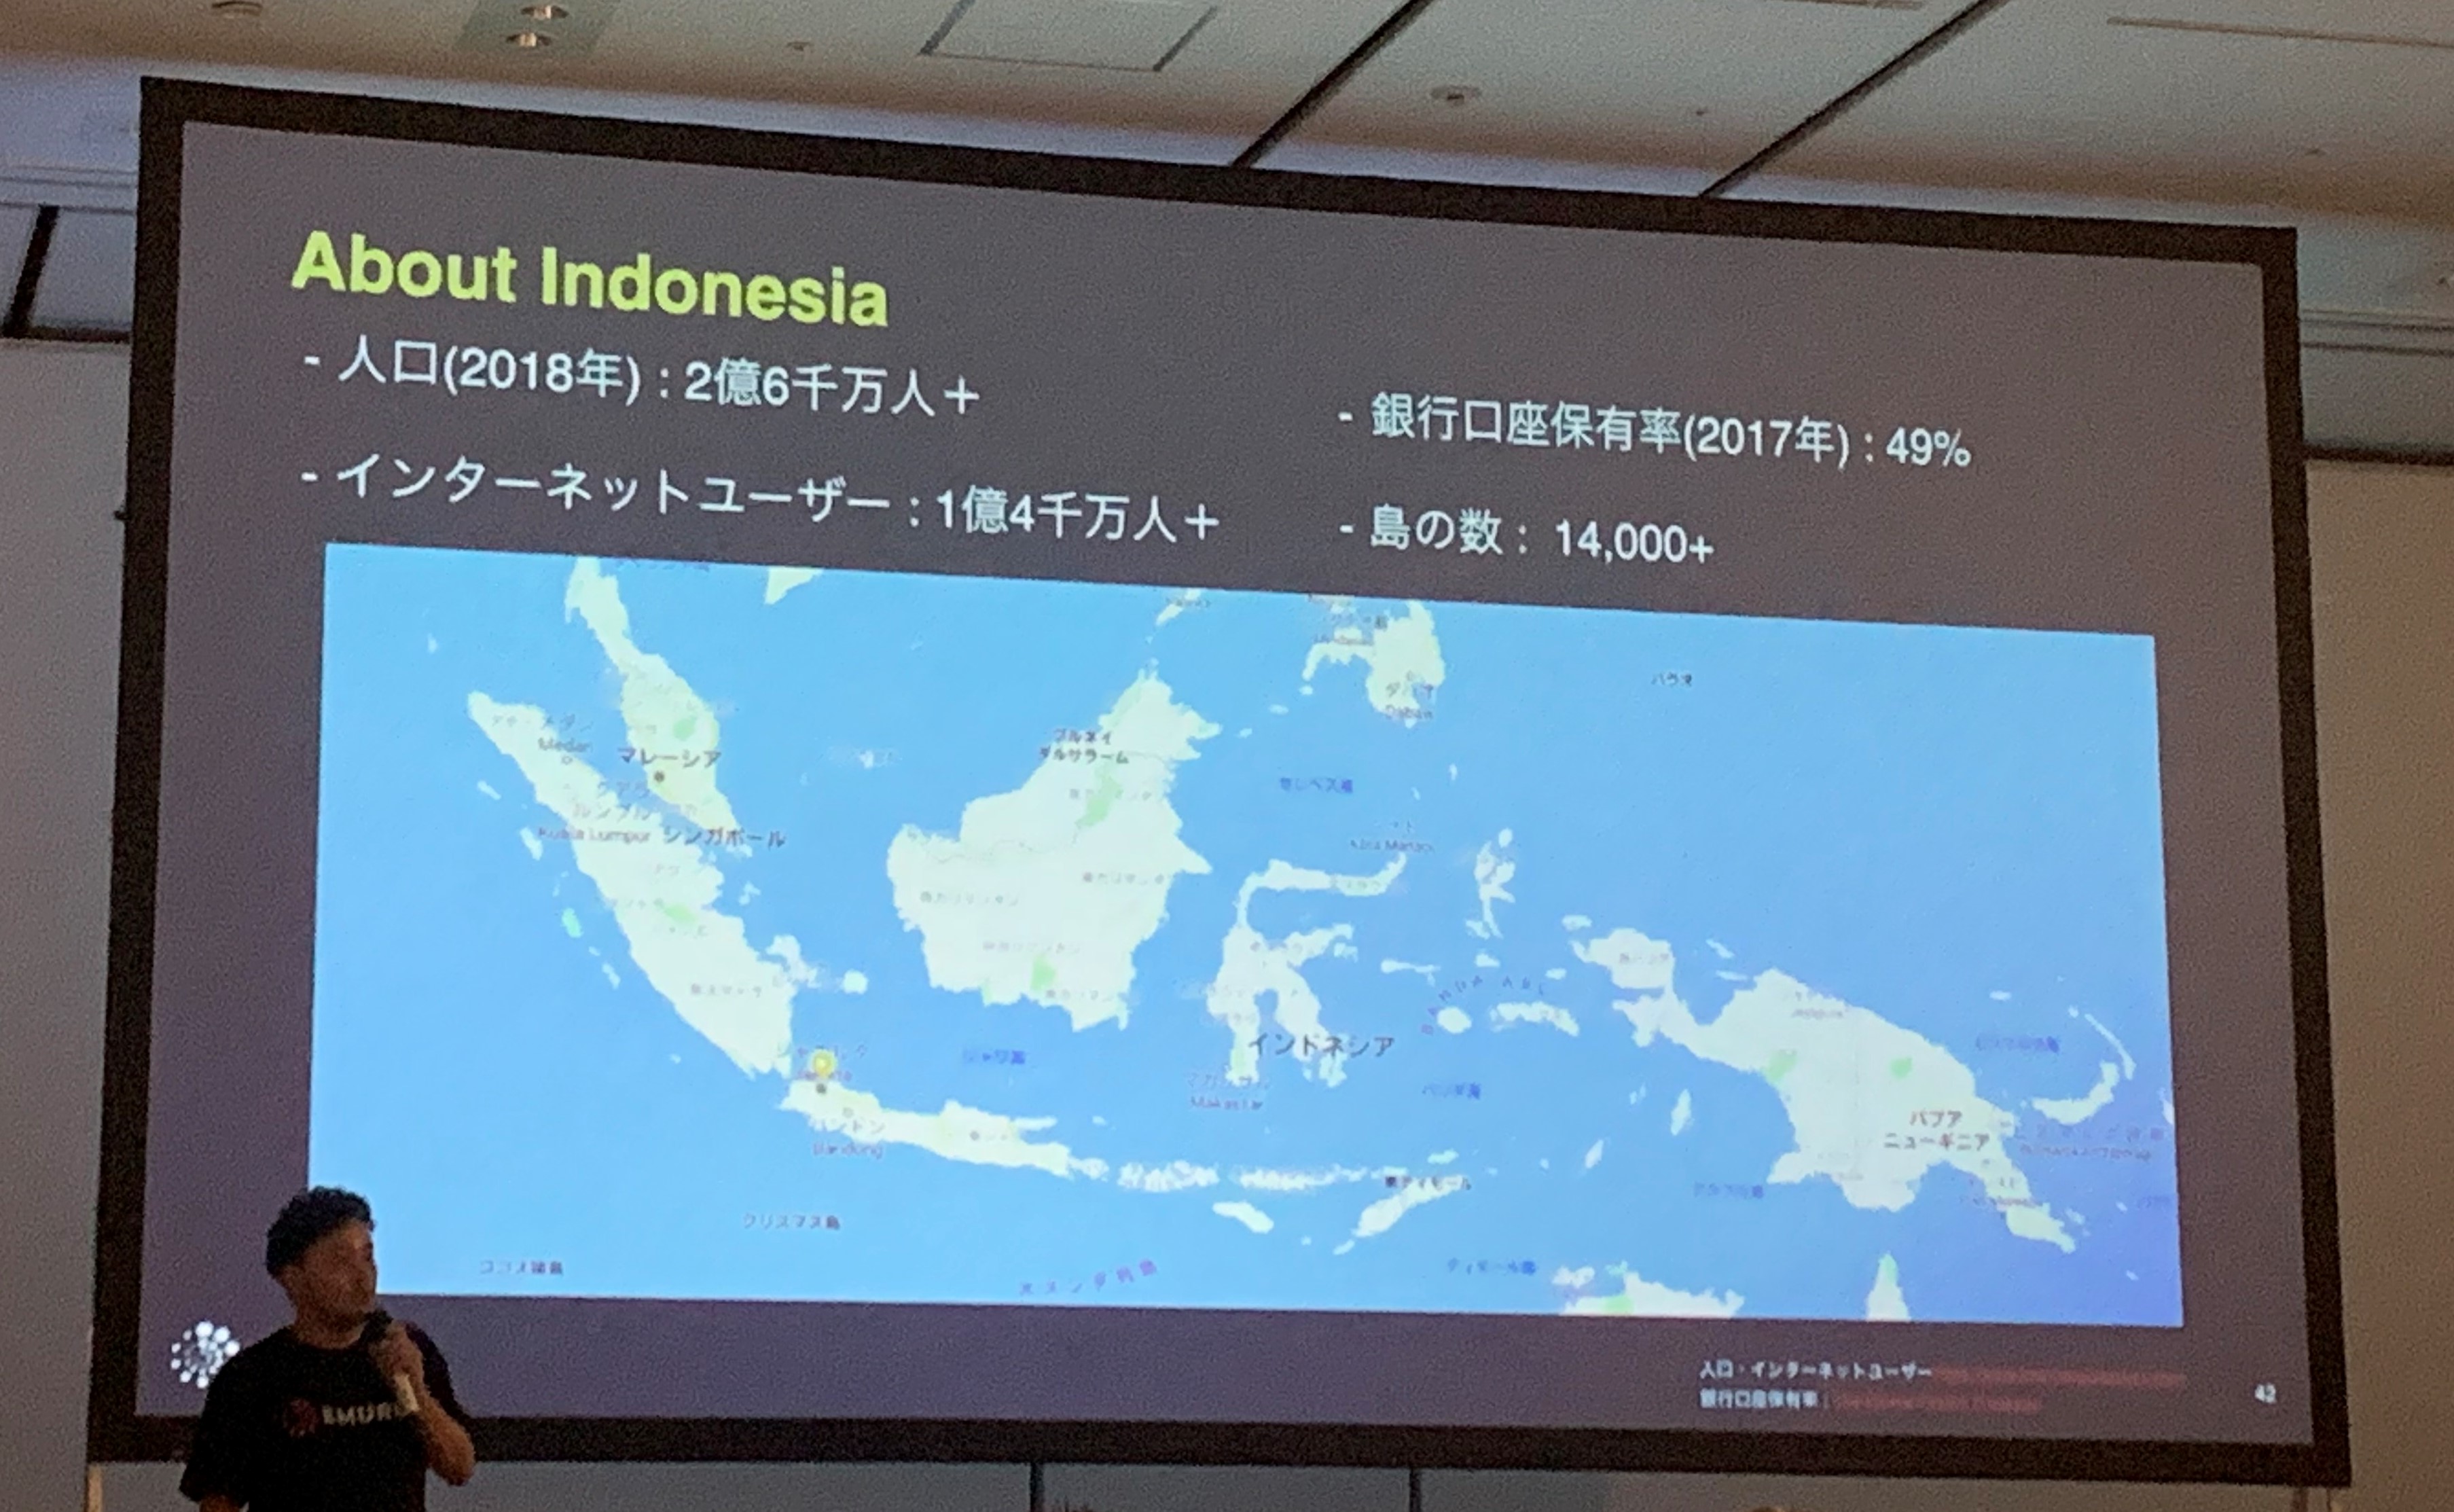 EMURGO Indonesia-1